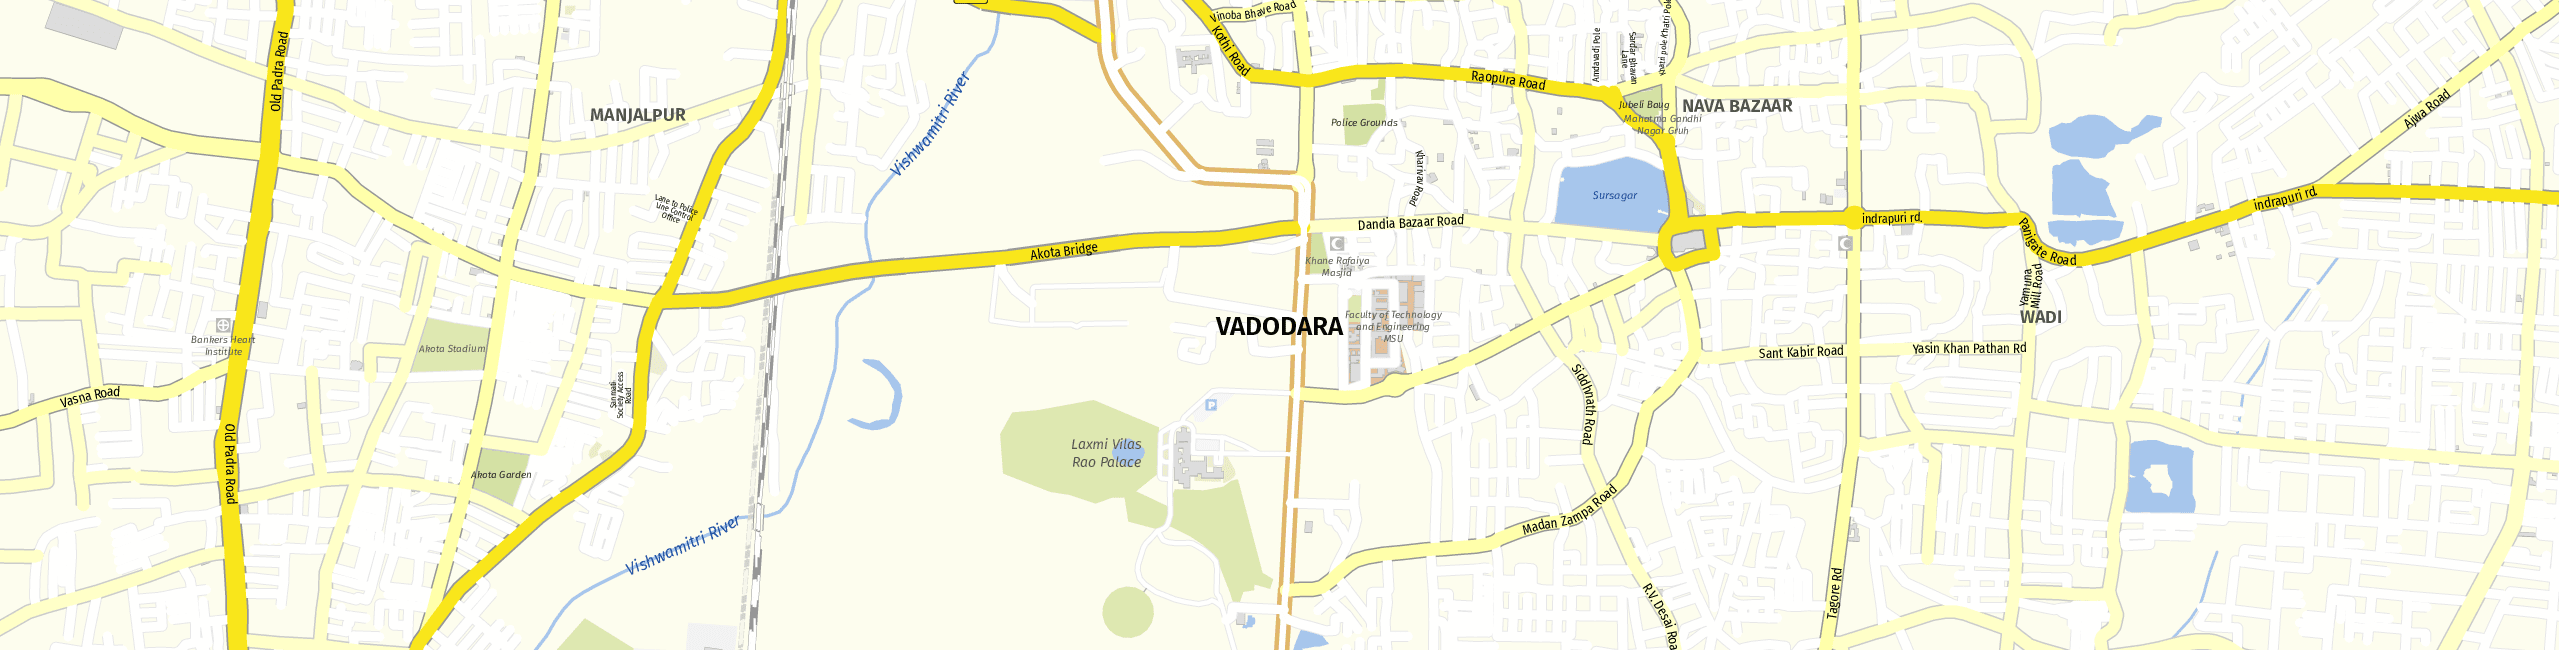 Stadtplan Vadodara zum Downloaden.